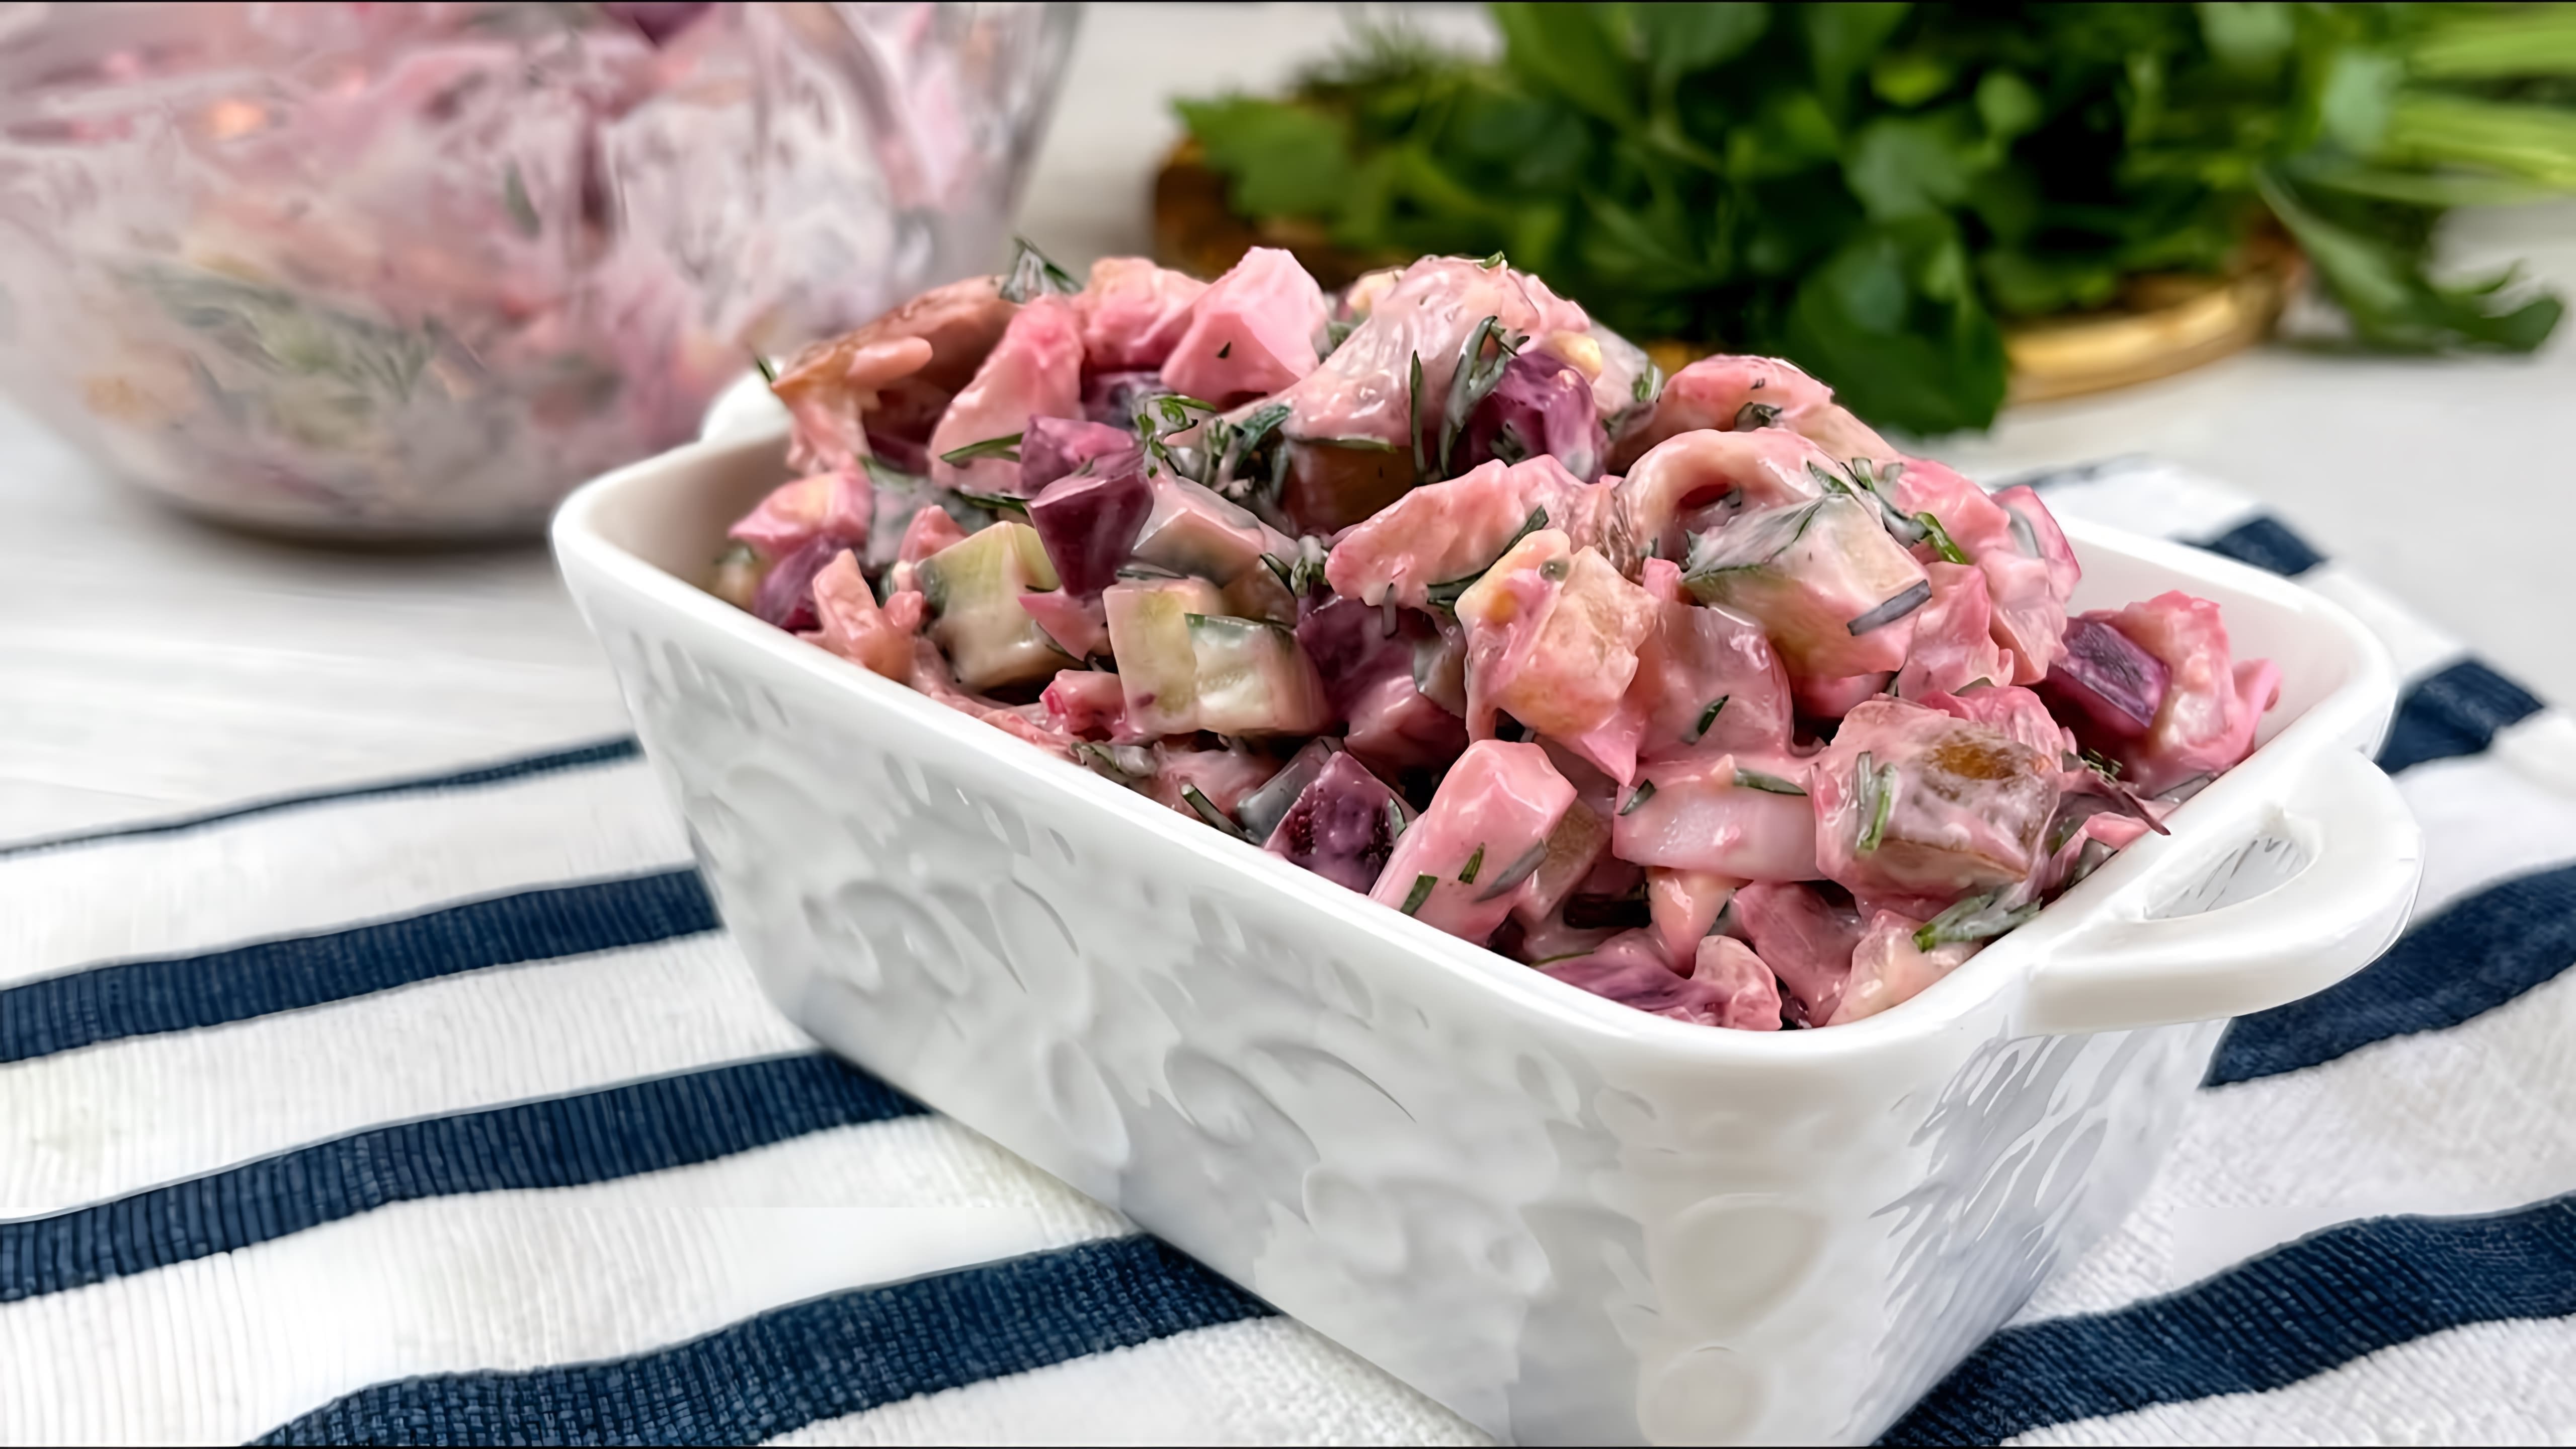 В этом видео демонстрируется процесс приготовления салата "Розовый фламинго" по рецепту от подписчицы